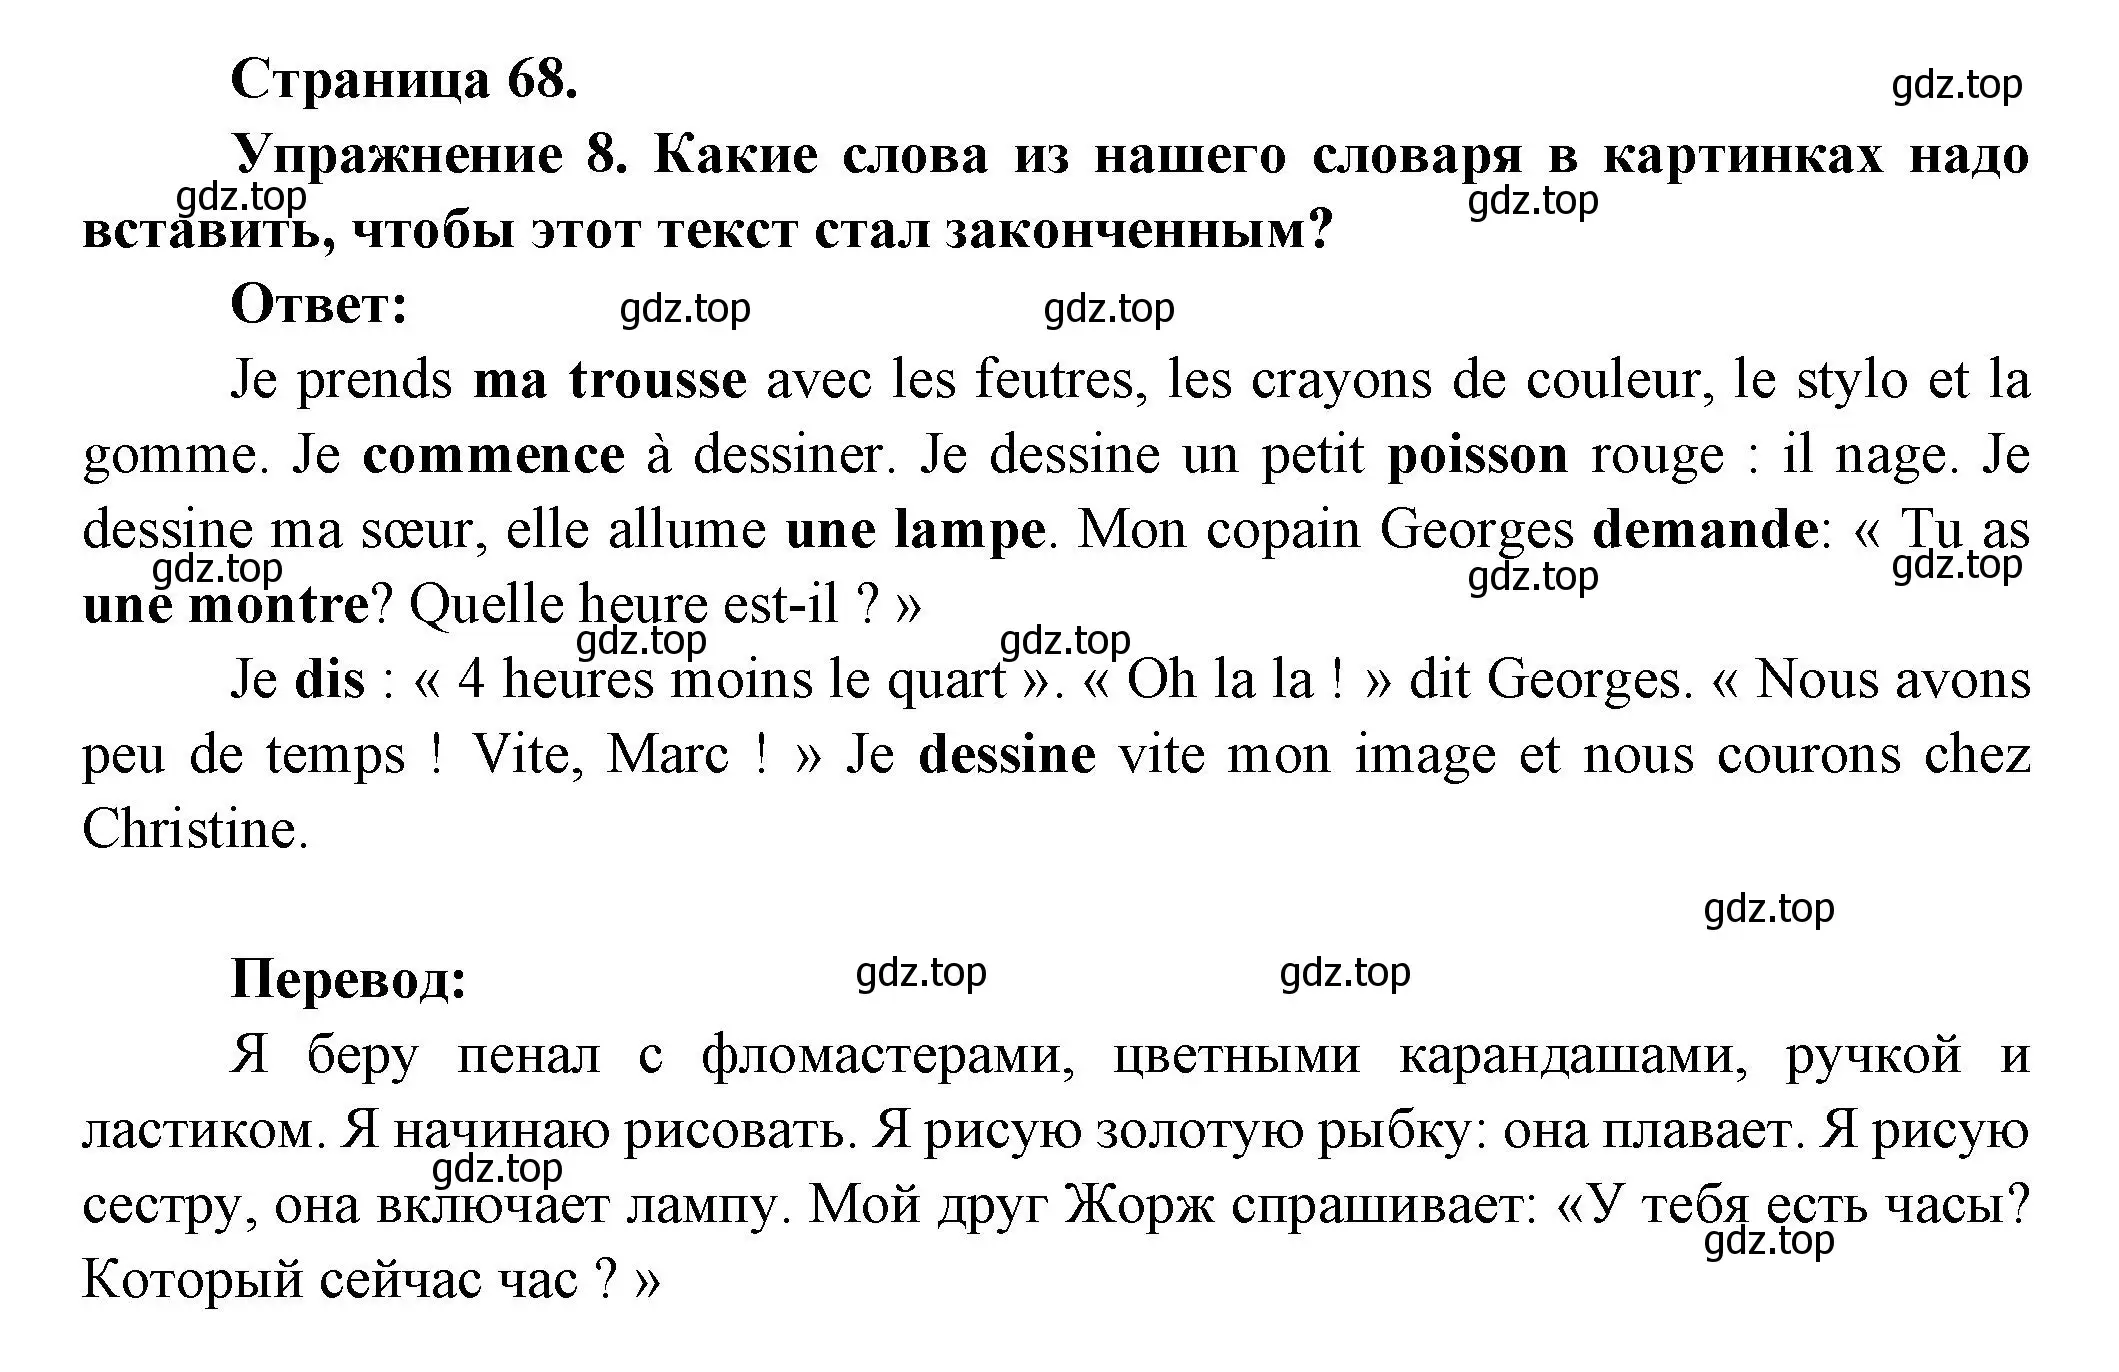 Решение номер 8 (страница 68) гдз по французскому языку 5 класс Береговская, Белосельская, учебник 1 часть